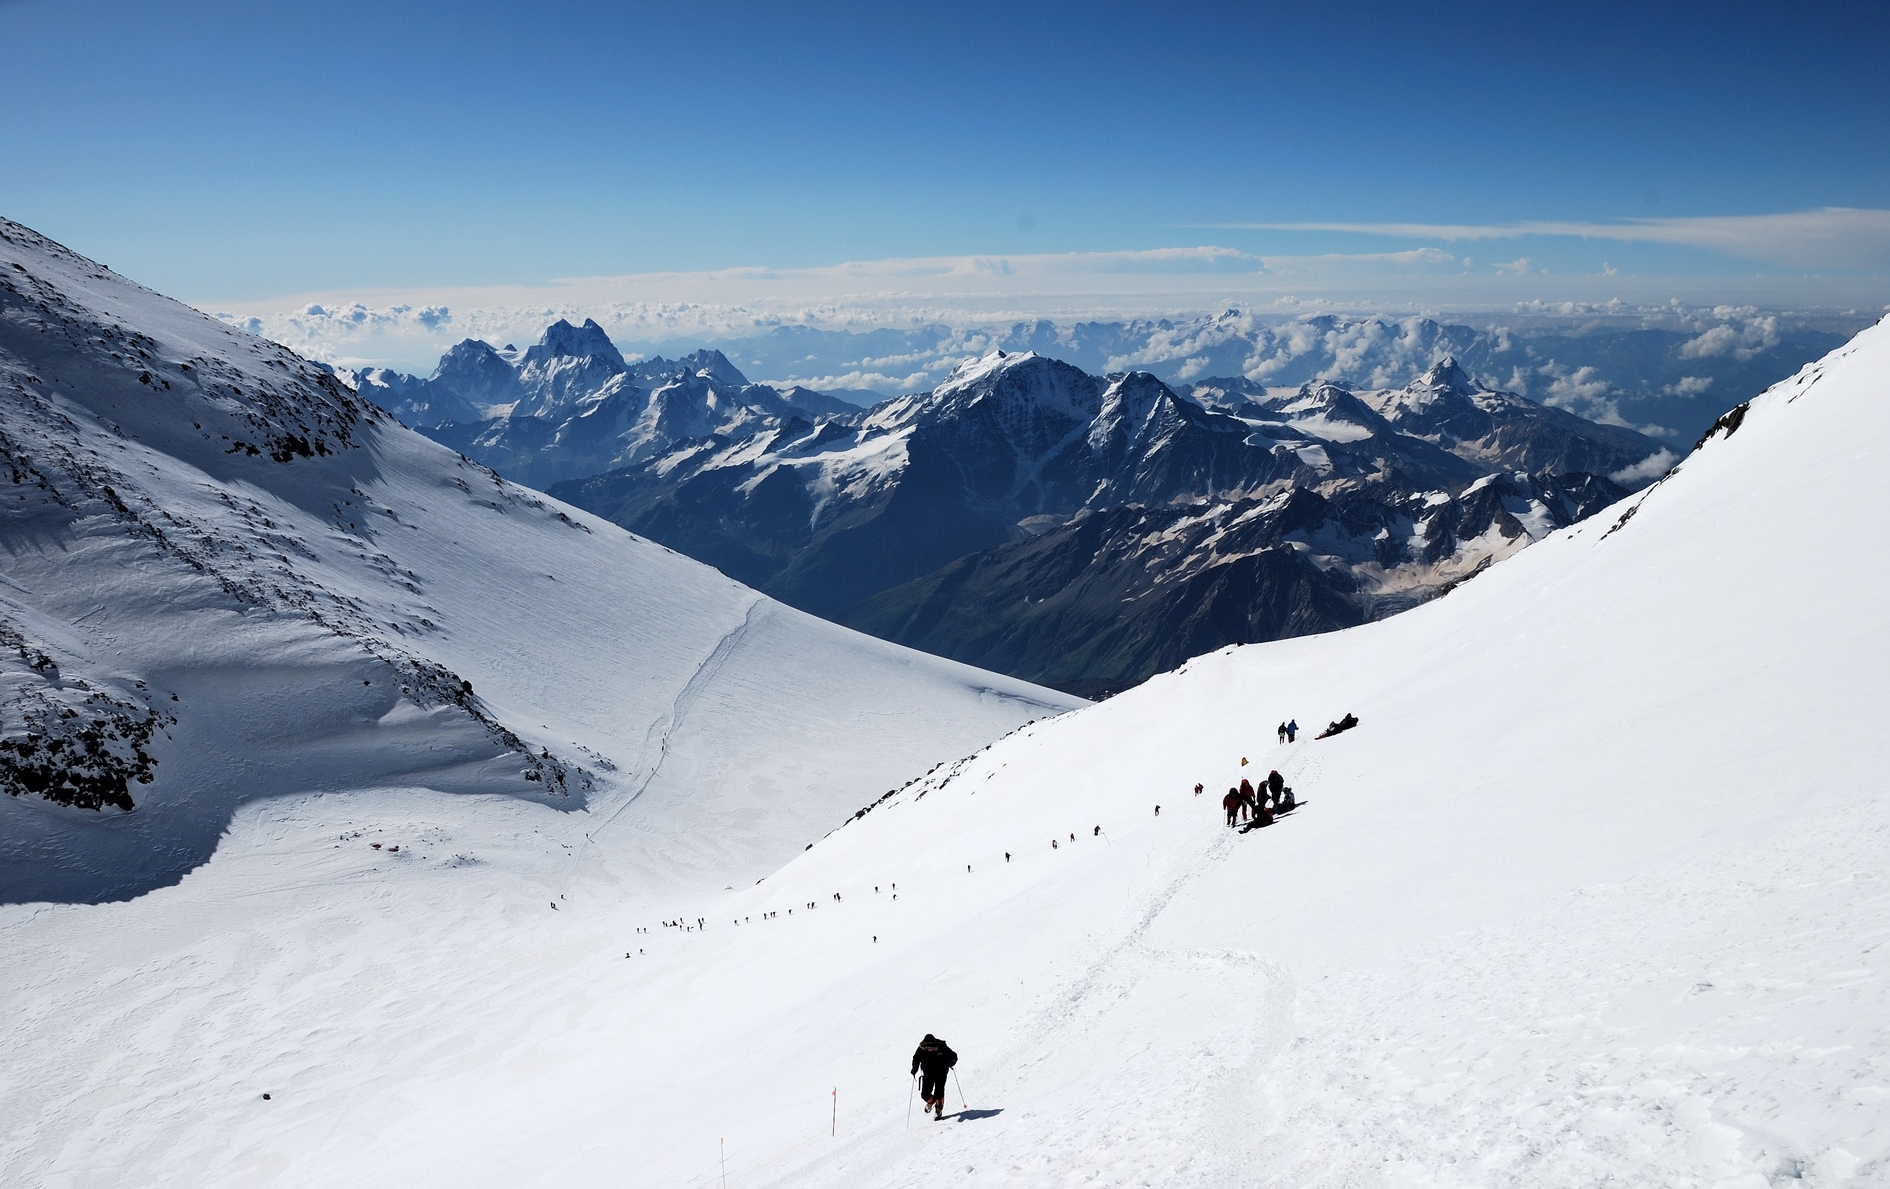 Эльбрус, седловина на отметке 5300 метров